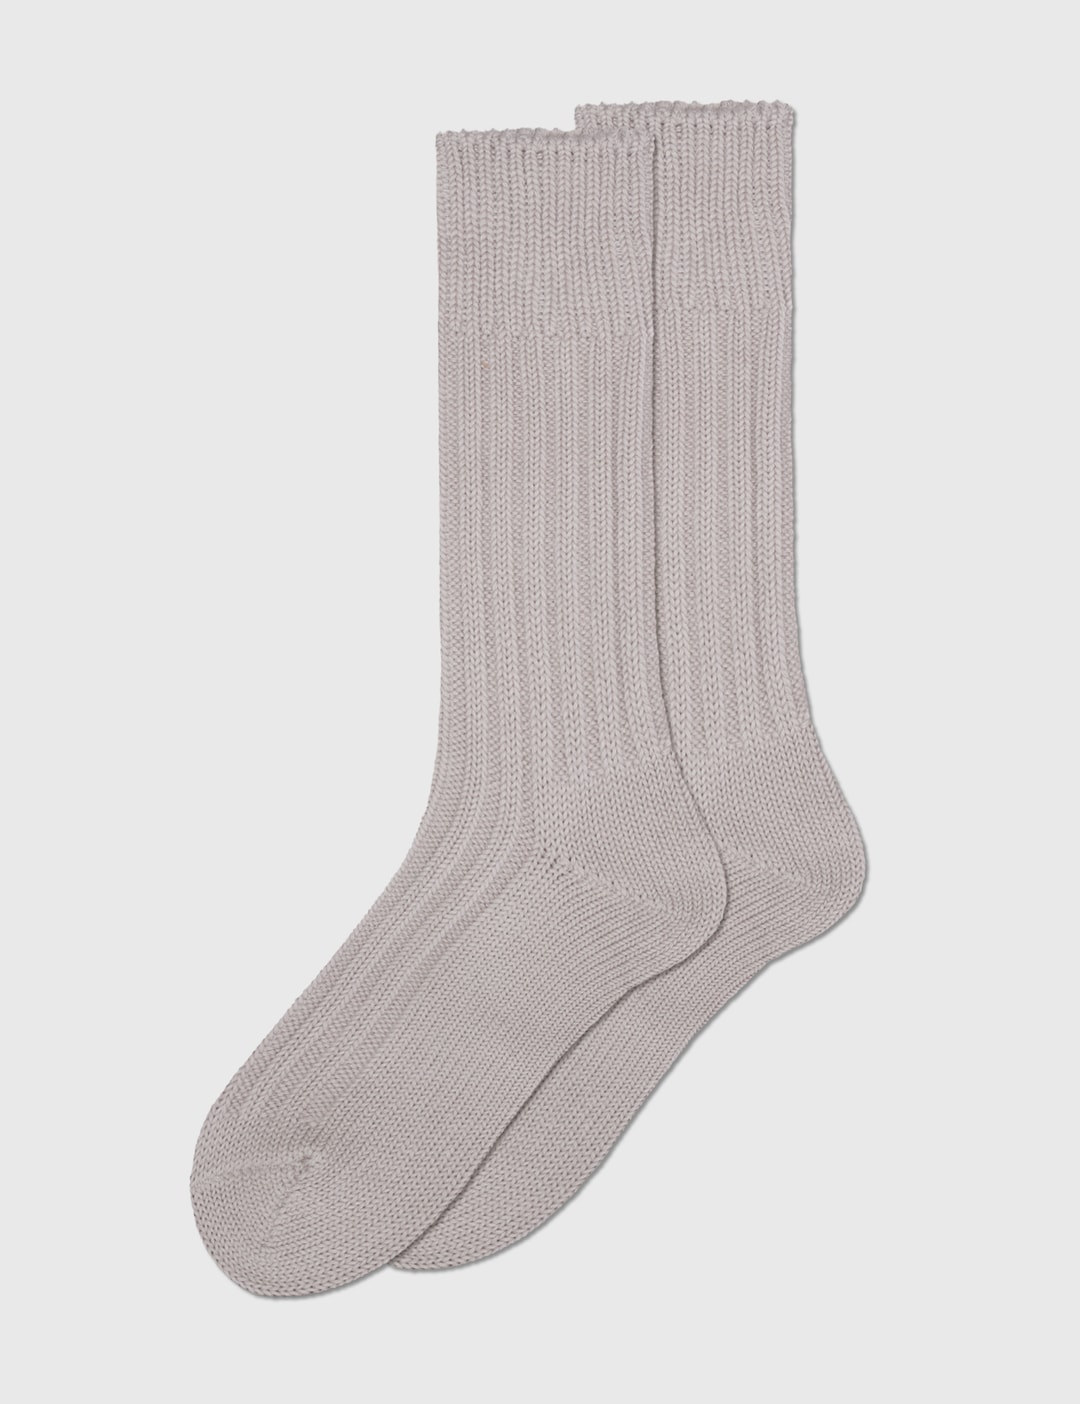 Decka Socks - Cased Heavyweight Plain Socks | HBX - Globally Curated ...